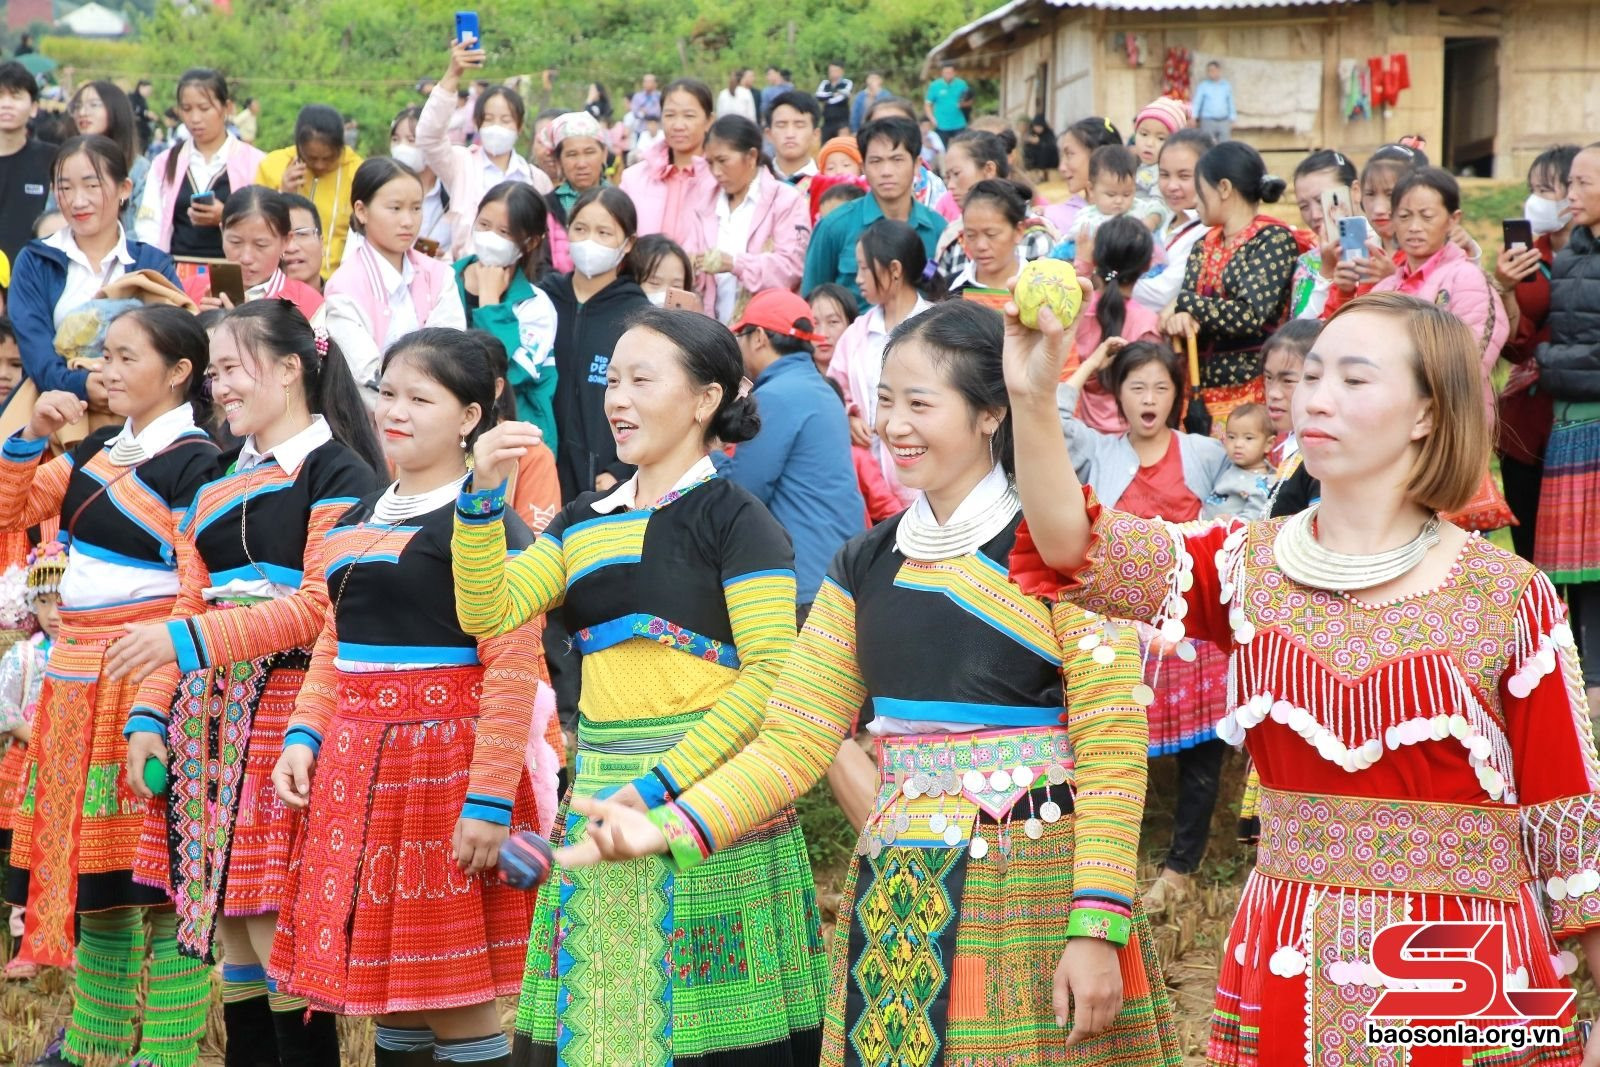 Sôi nổi các hoạt động đón Tết cổ truyền đồng bào dân tộc Mông ở Bắc Yên